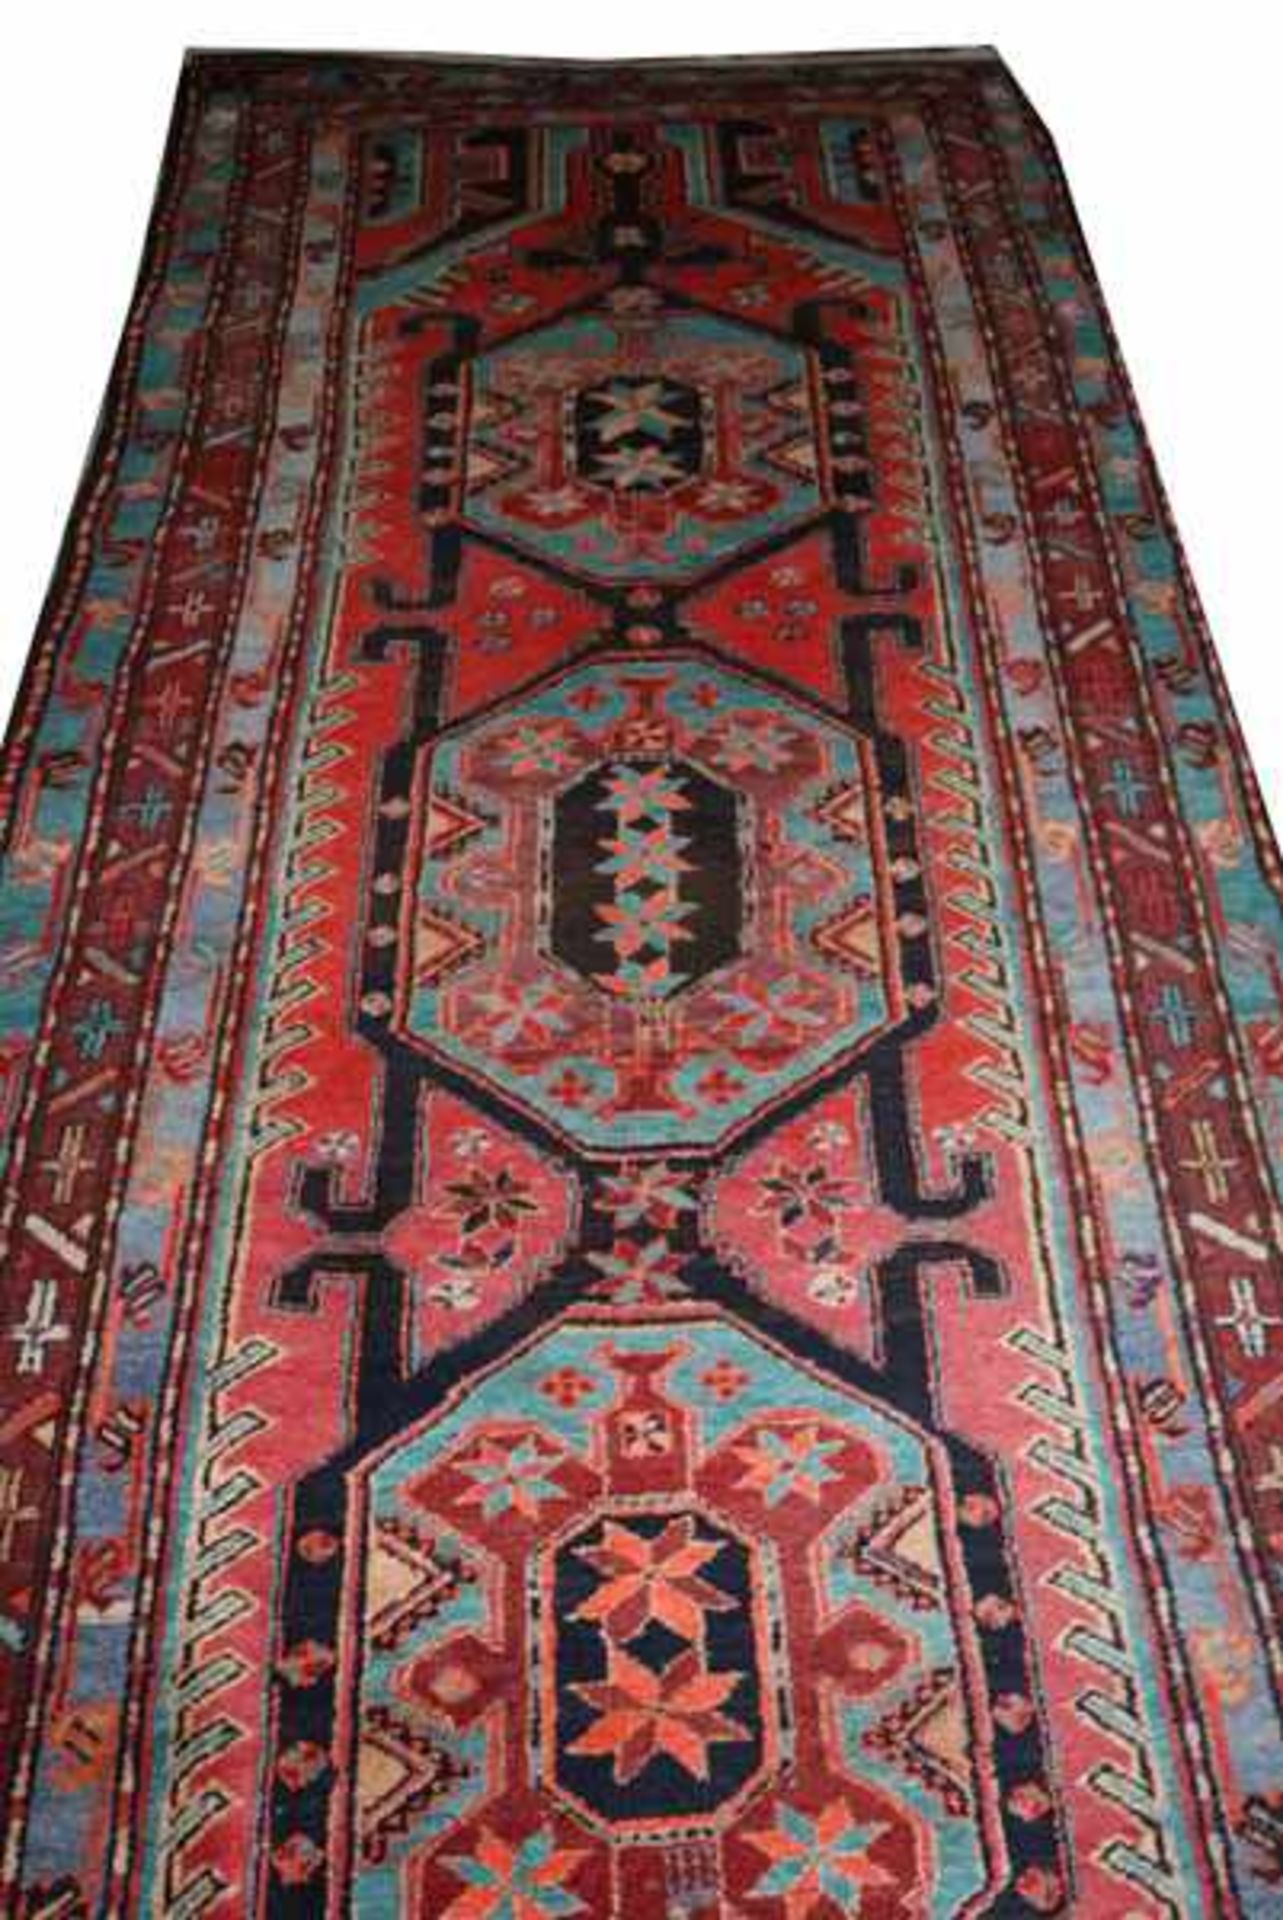 Teppich, rot/türkis/bunt, Gebrauchsspuren, teils fleckig, 340 cm x 139 cm